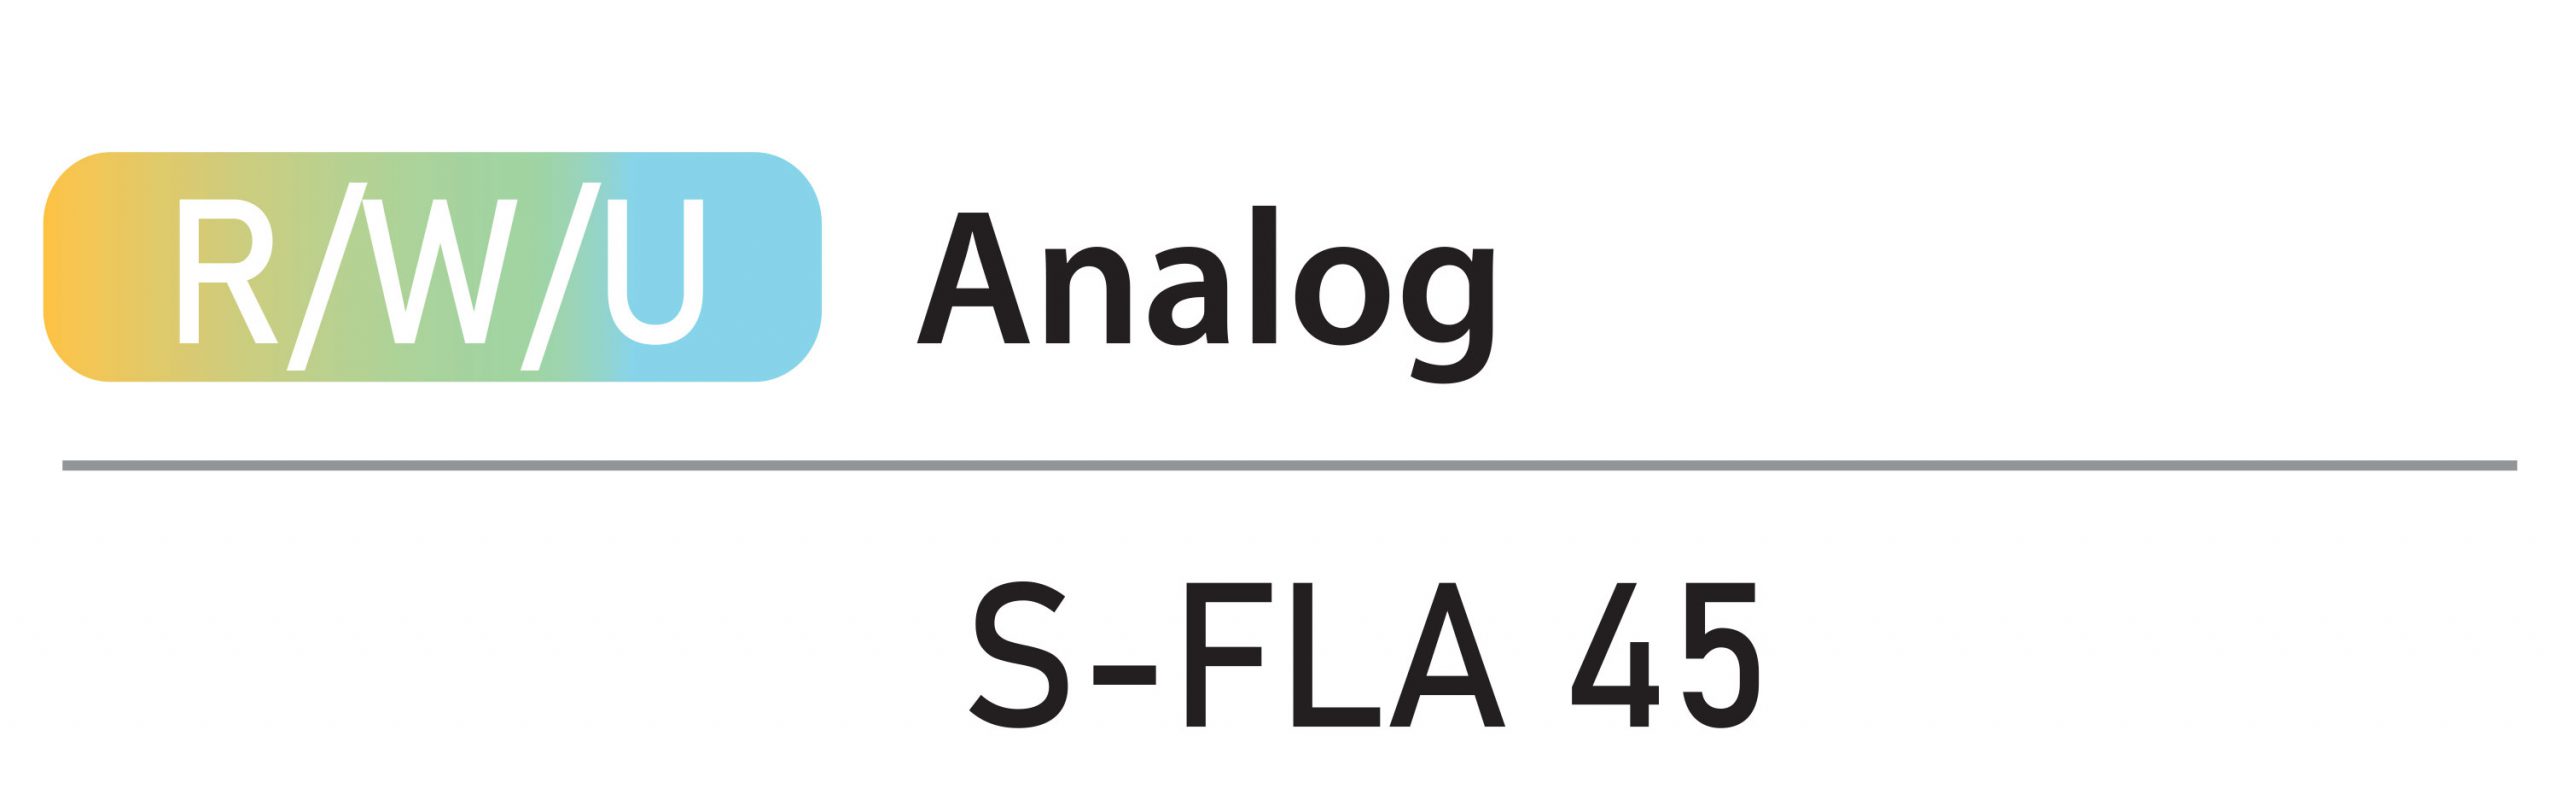 فیکسچر لب آنالوگ Fixture Lab Analog T.STRONG